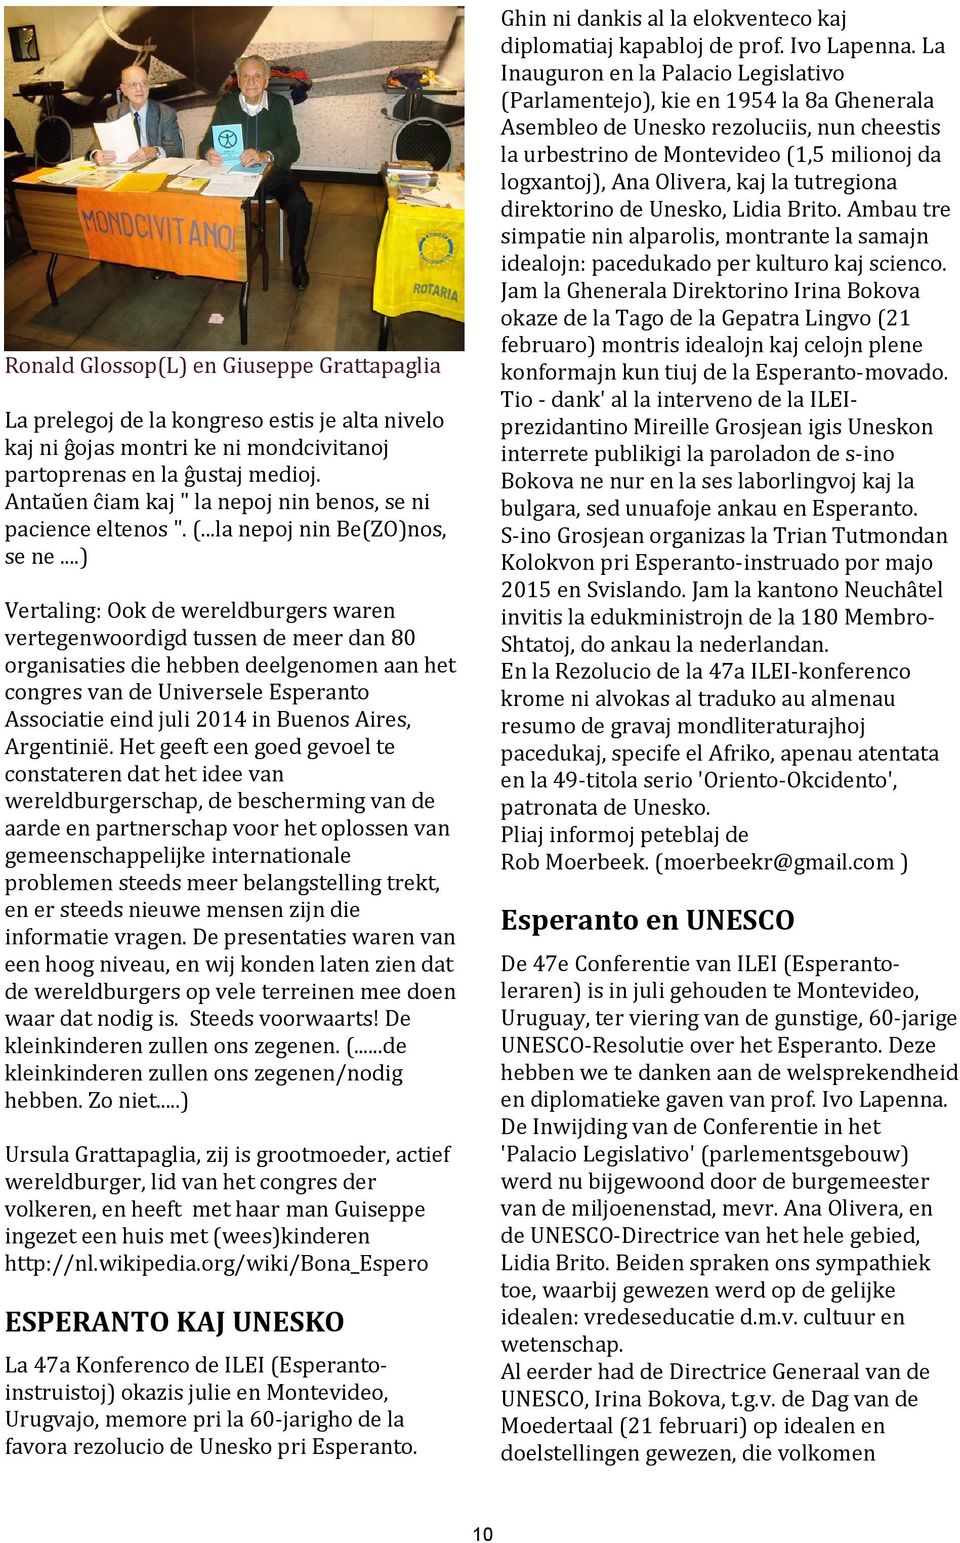 ..) Vertaling: Ook de wereldburgers waren vertegenwoordigd tussen de meer dan 80 organisaties die hebben deelgenomen aan het congres van de Universele Esperanto Associatie eind juli 2014 in Buenos